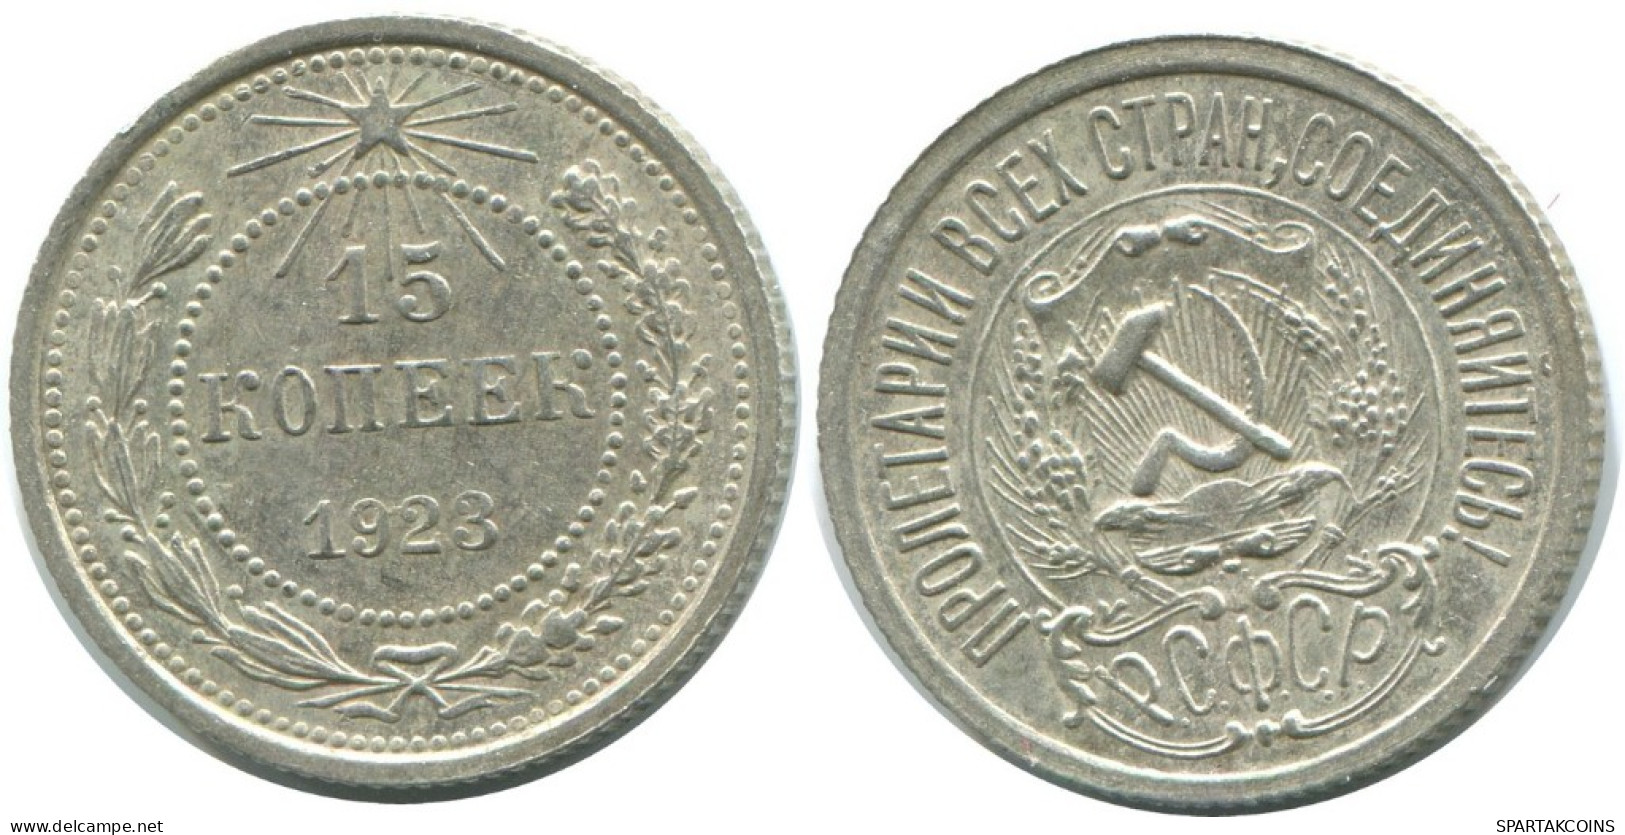 15 KOPEKS 1923 RUSSIA RSFSR SILVER Coin HIGH GRADE #AF032.4.U.A - Russland